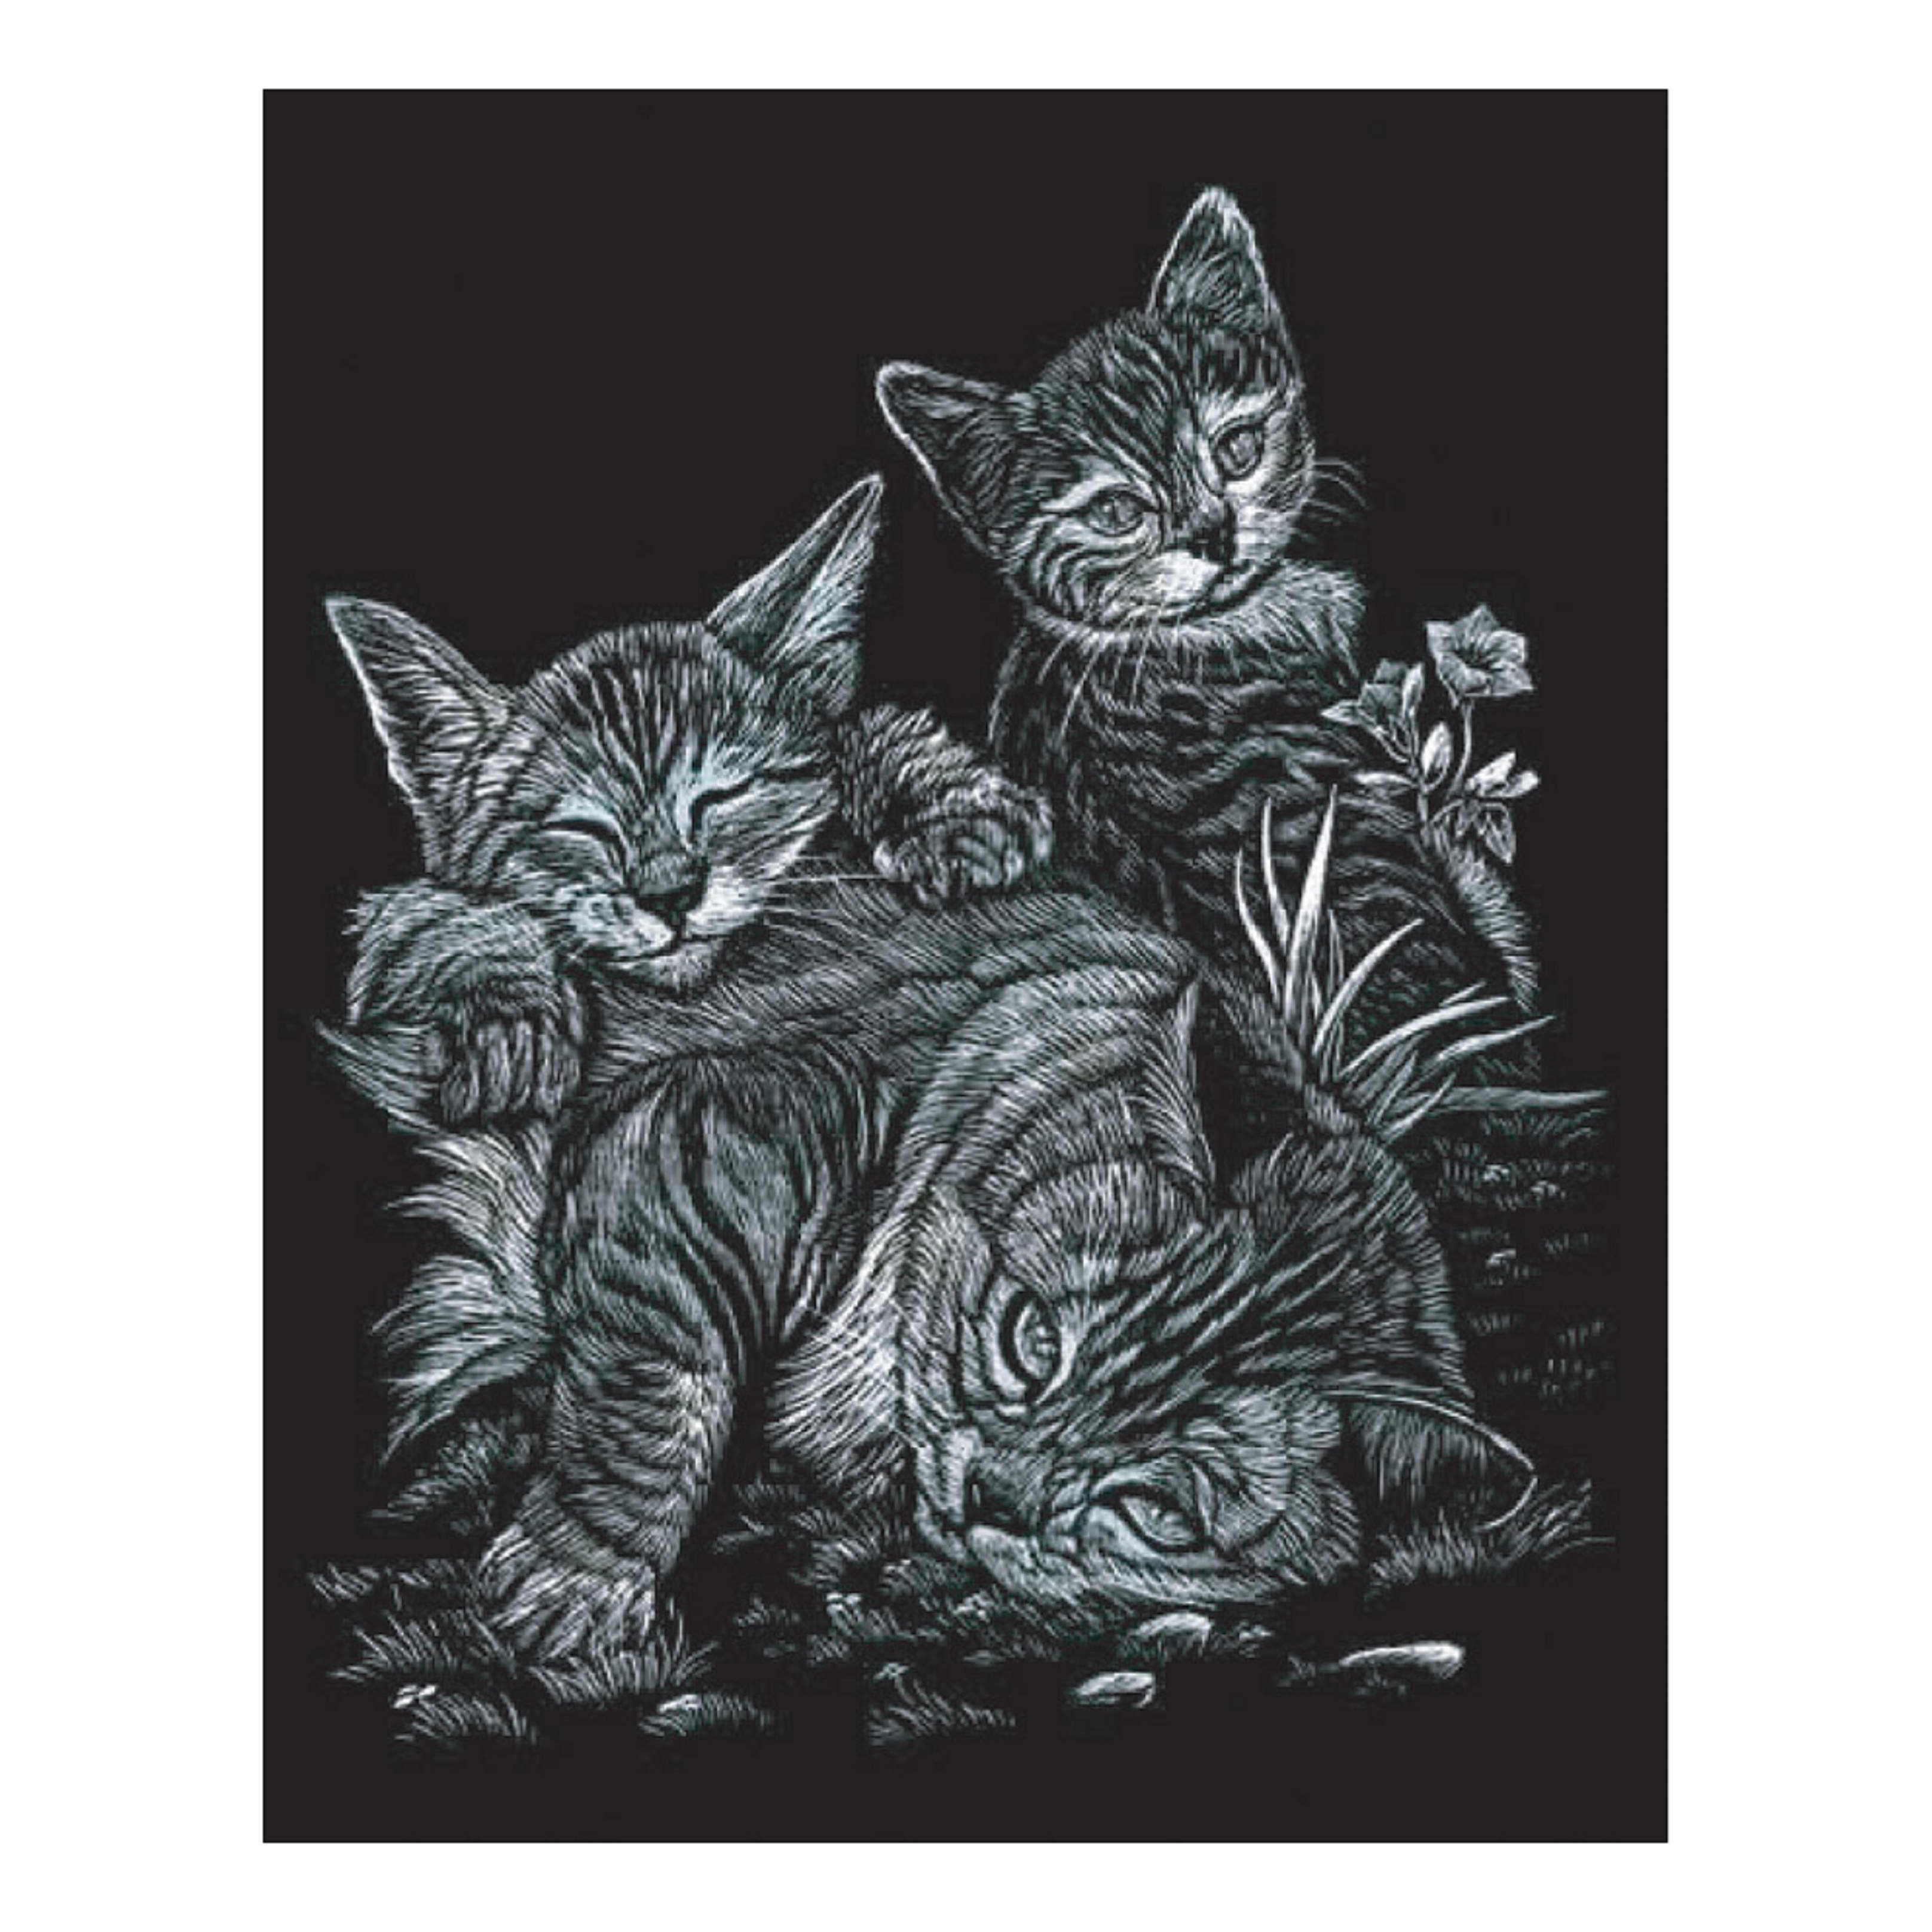 Engraving Art Tabby Cat & Kittens